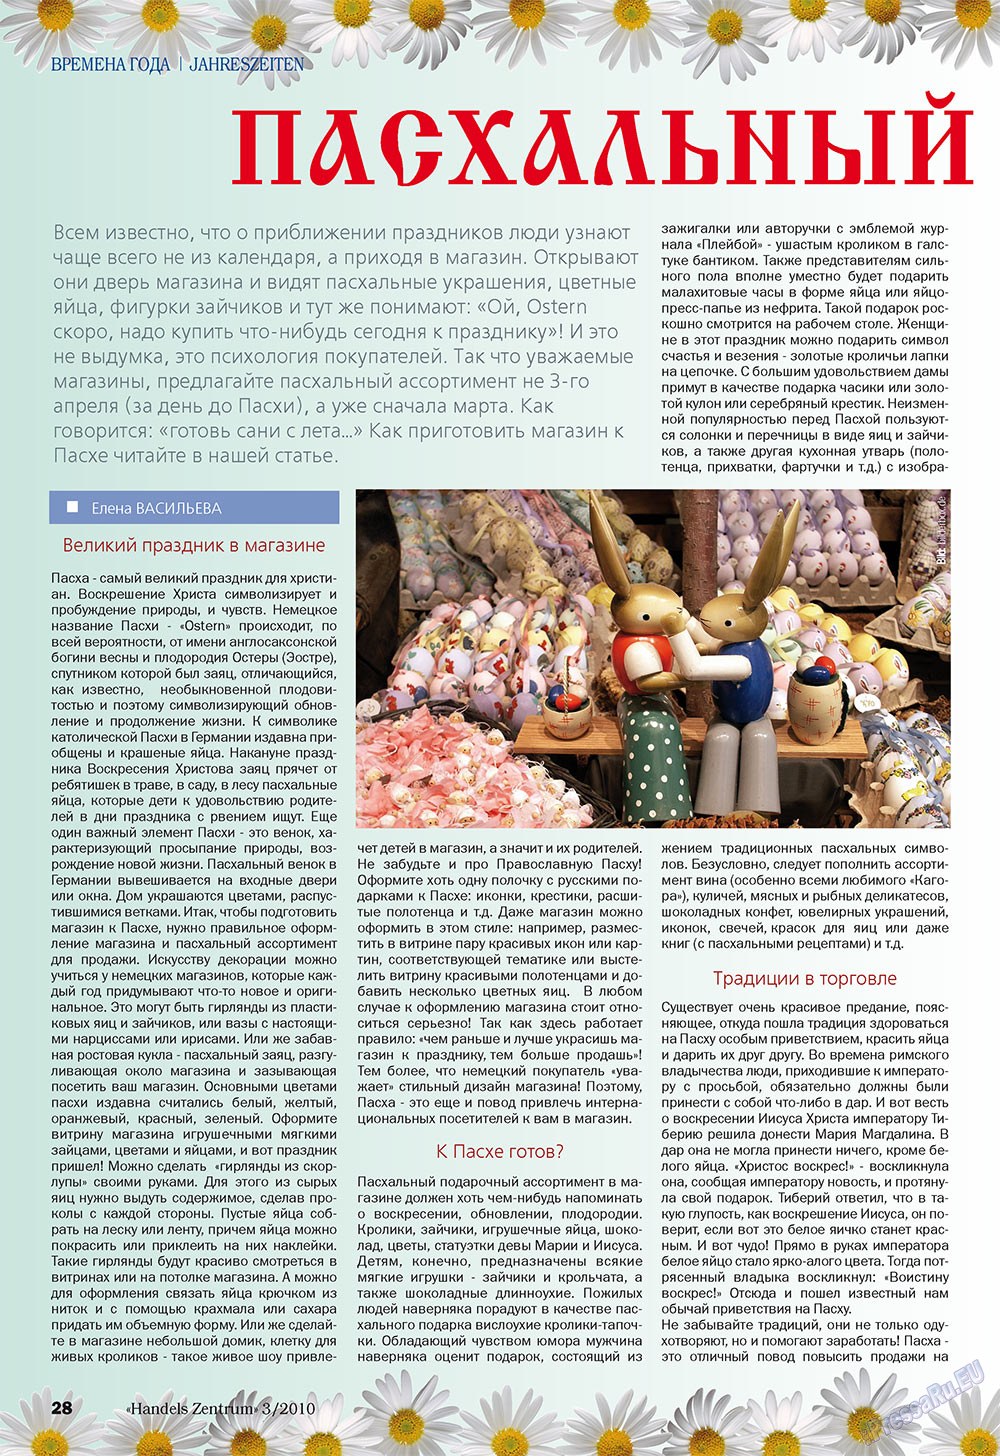 Торговый Центр (журнал). 2010 год, номер 3, стр. 28